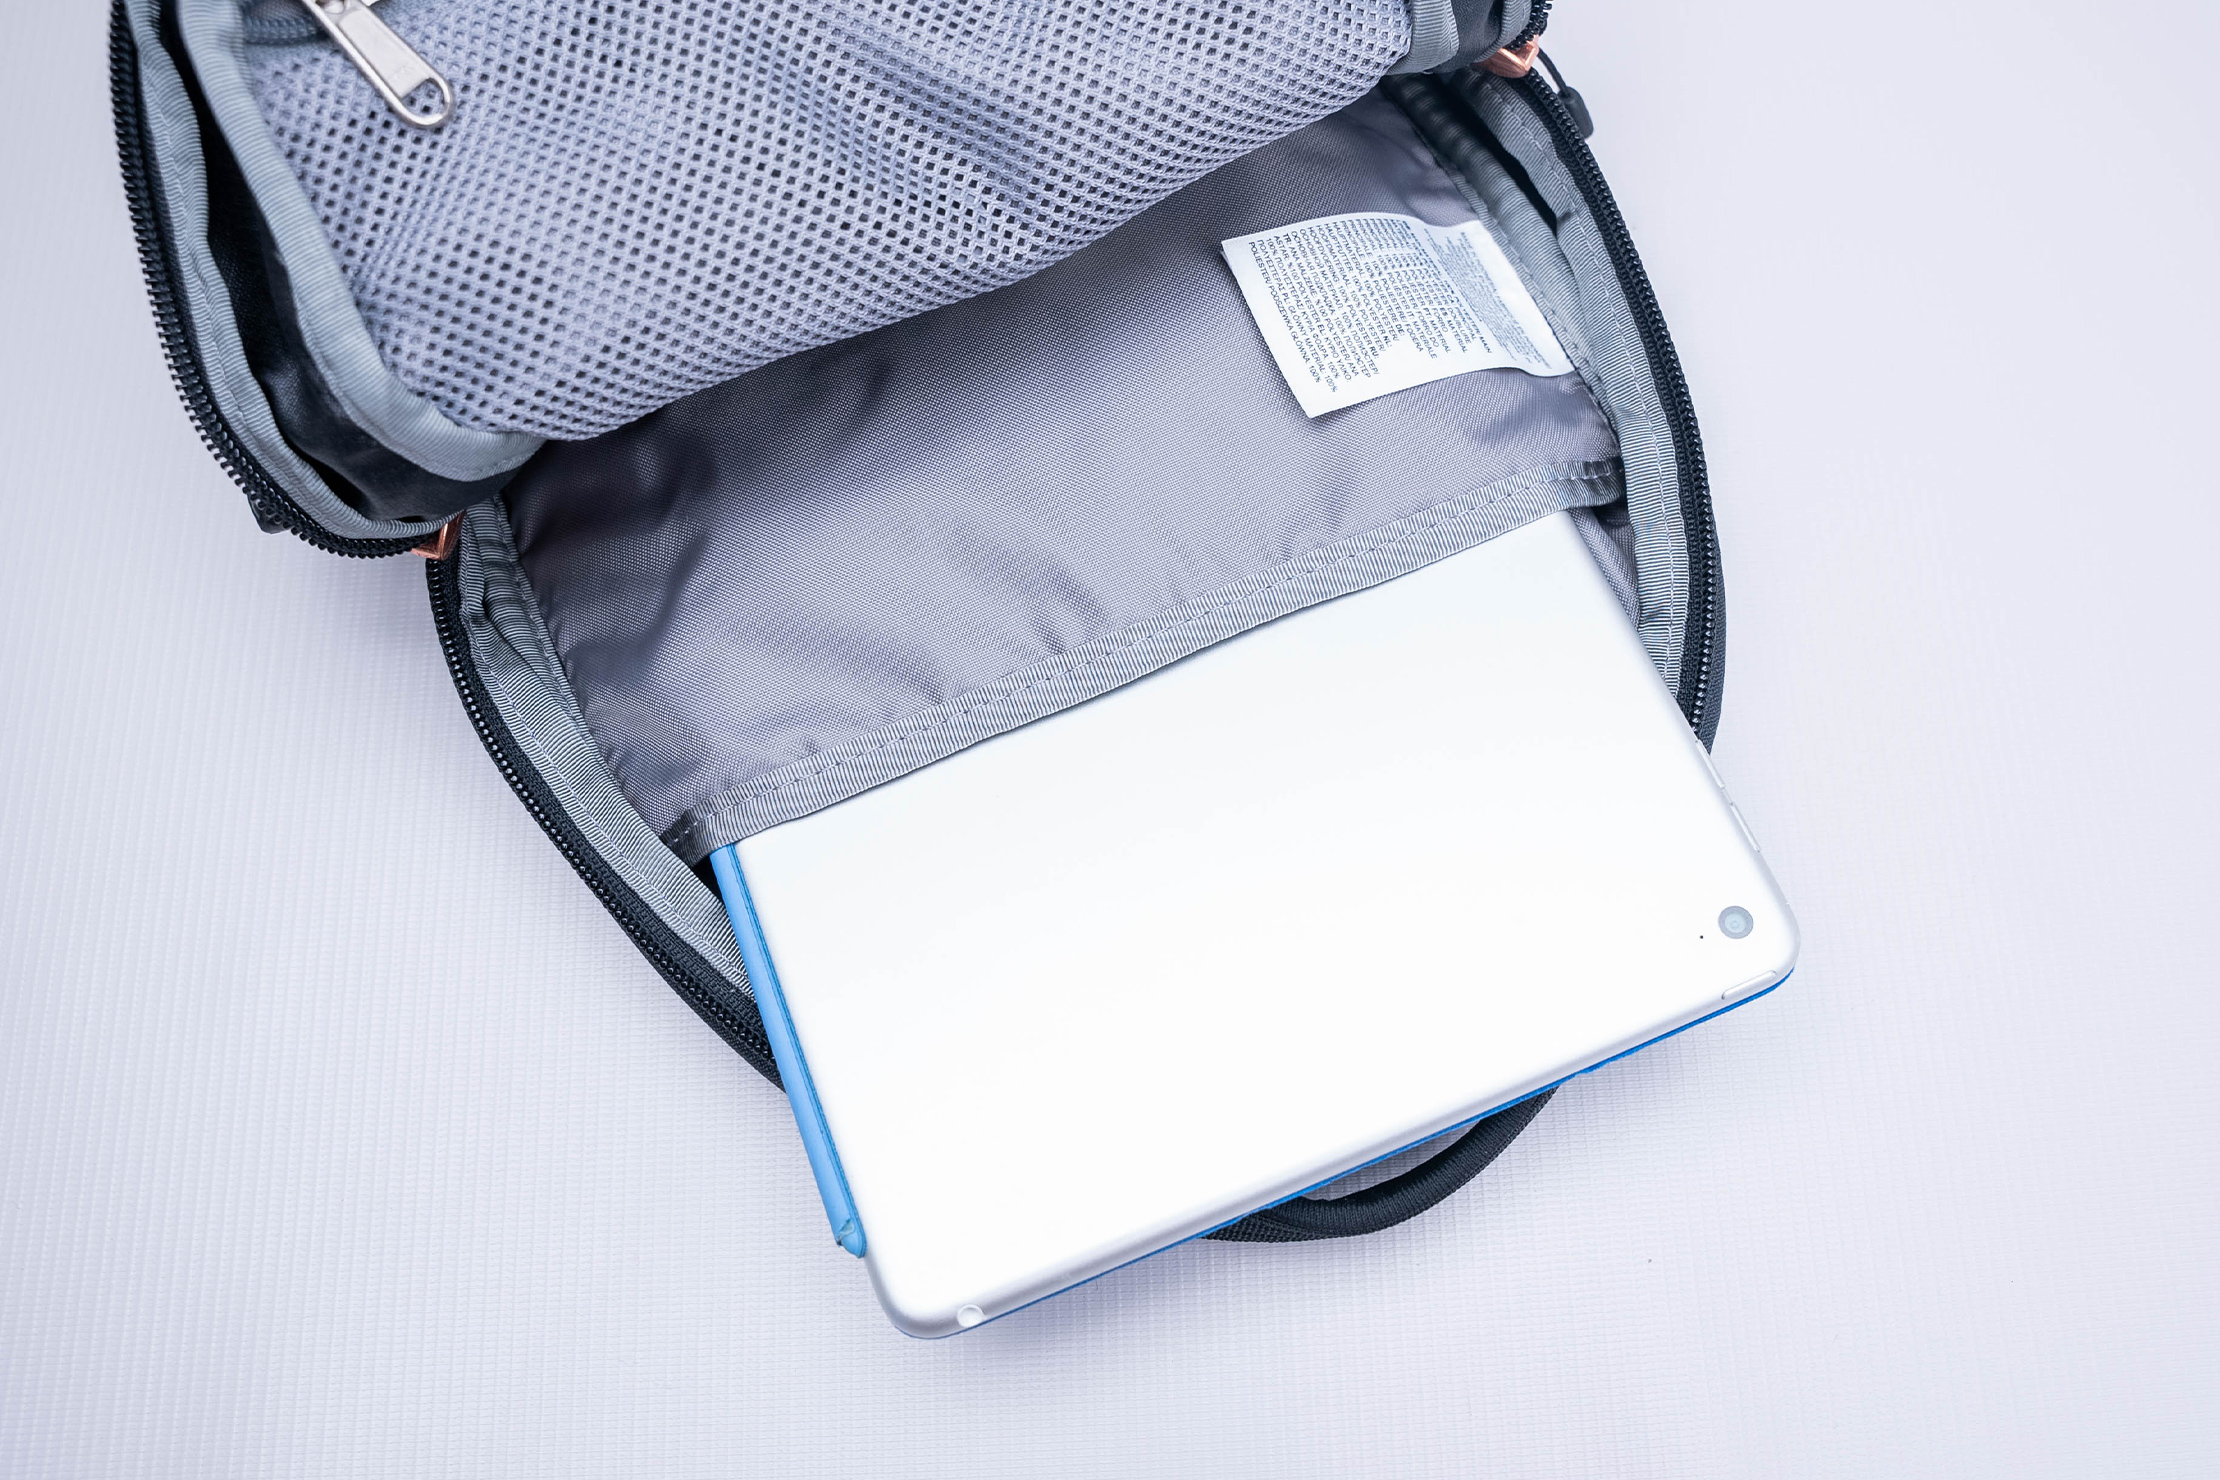 The North Face Borealis Mini Backpack iPad